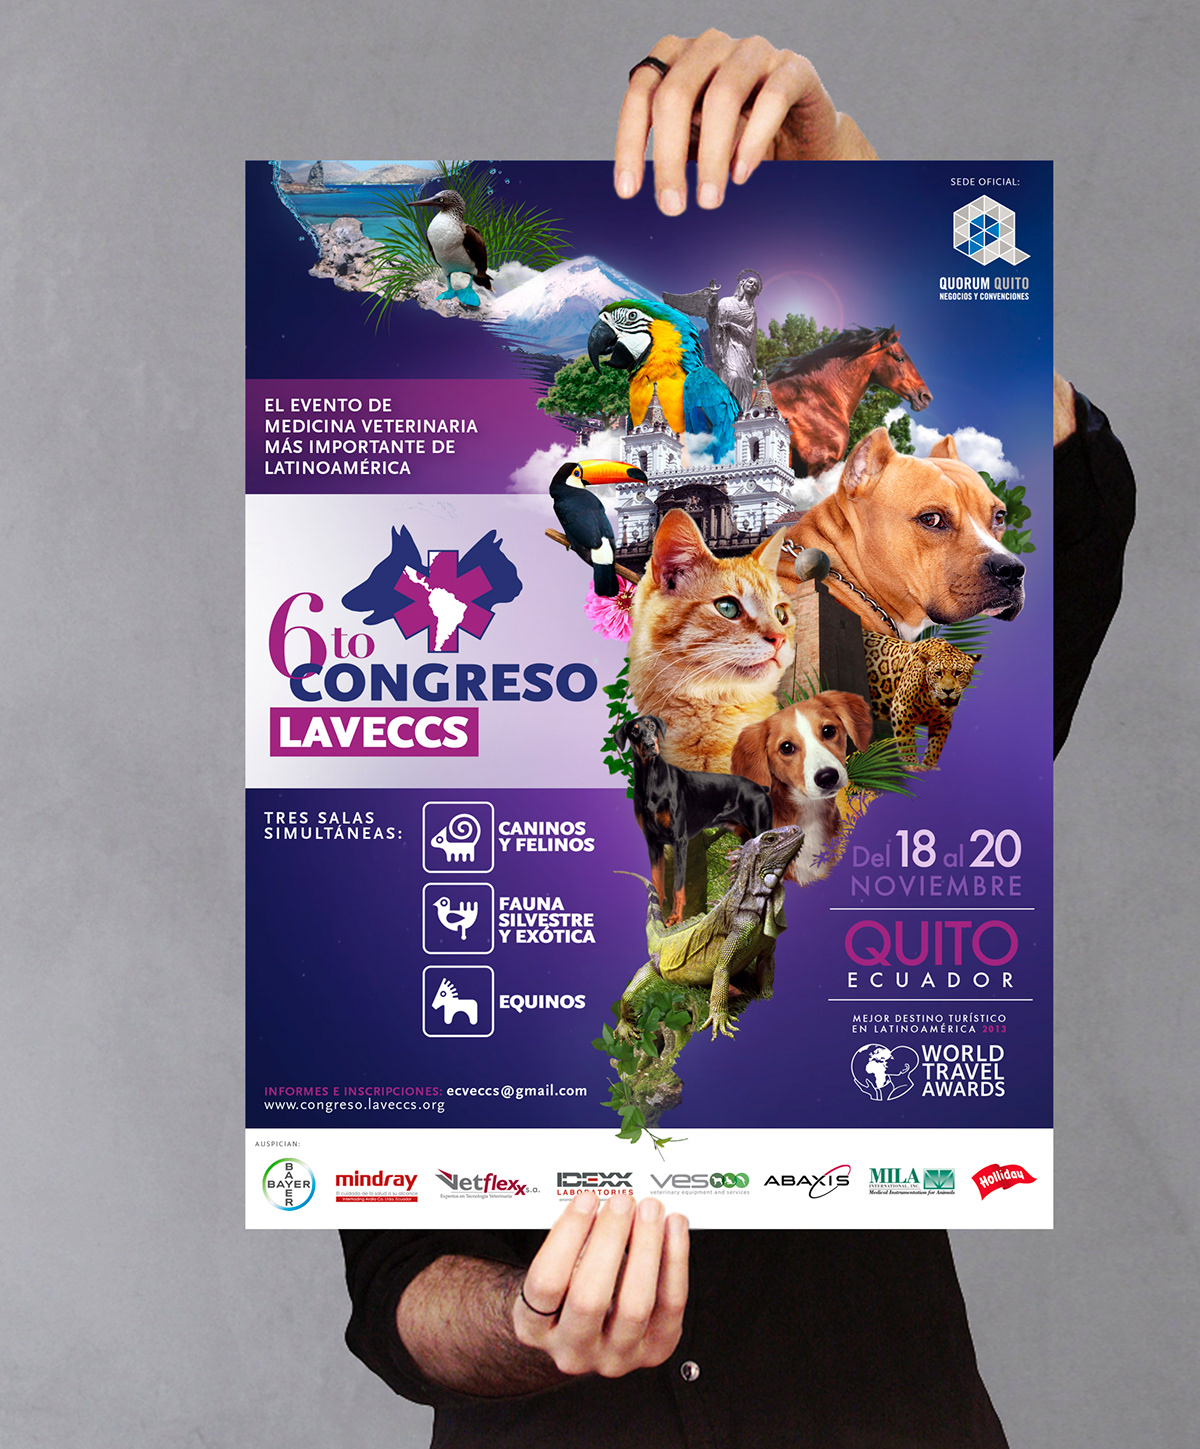 LAVECCS veterinaria congreso congress seminario medicina mascotas Pet animal Ecuador quito Galapagos collage poster dog